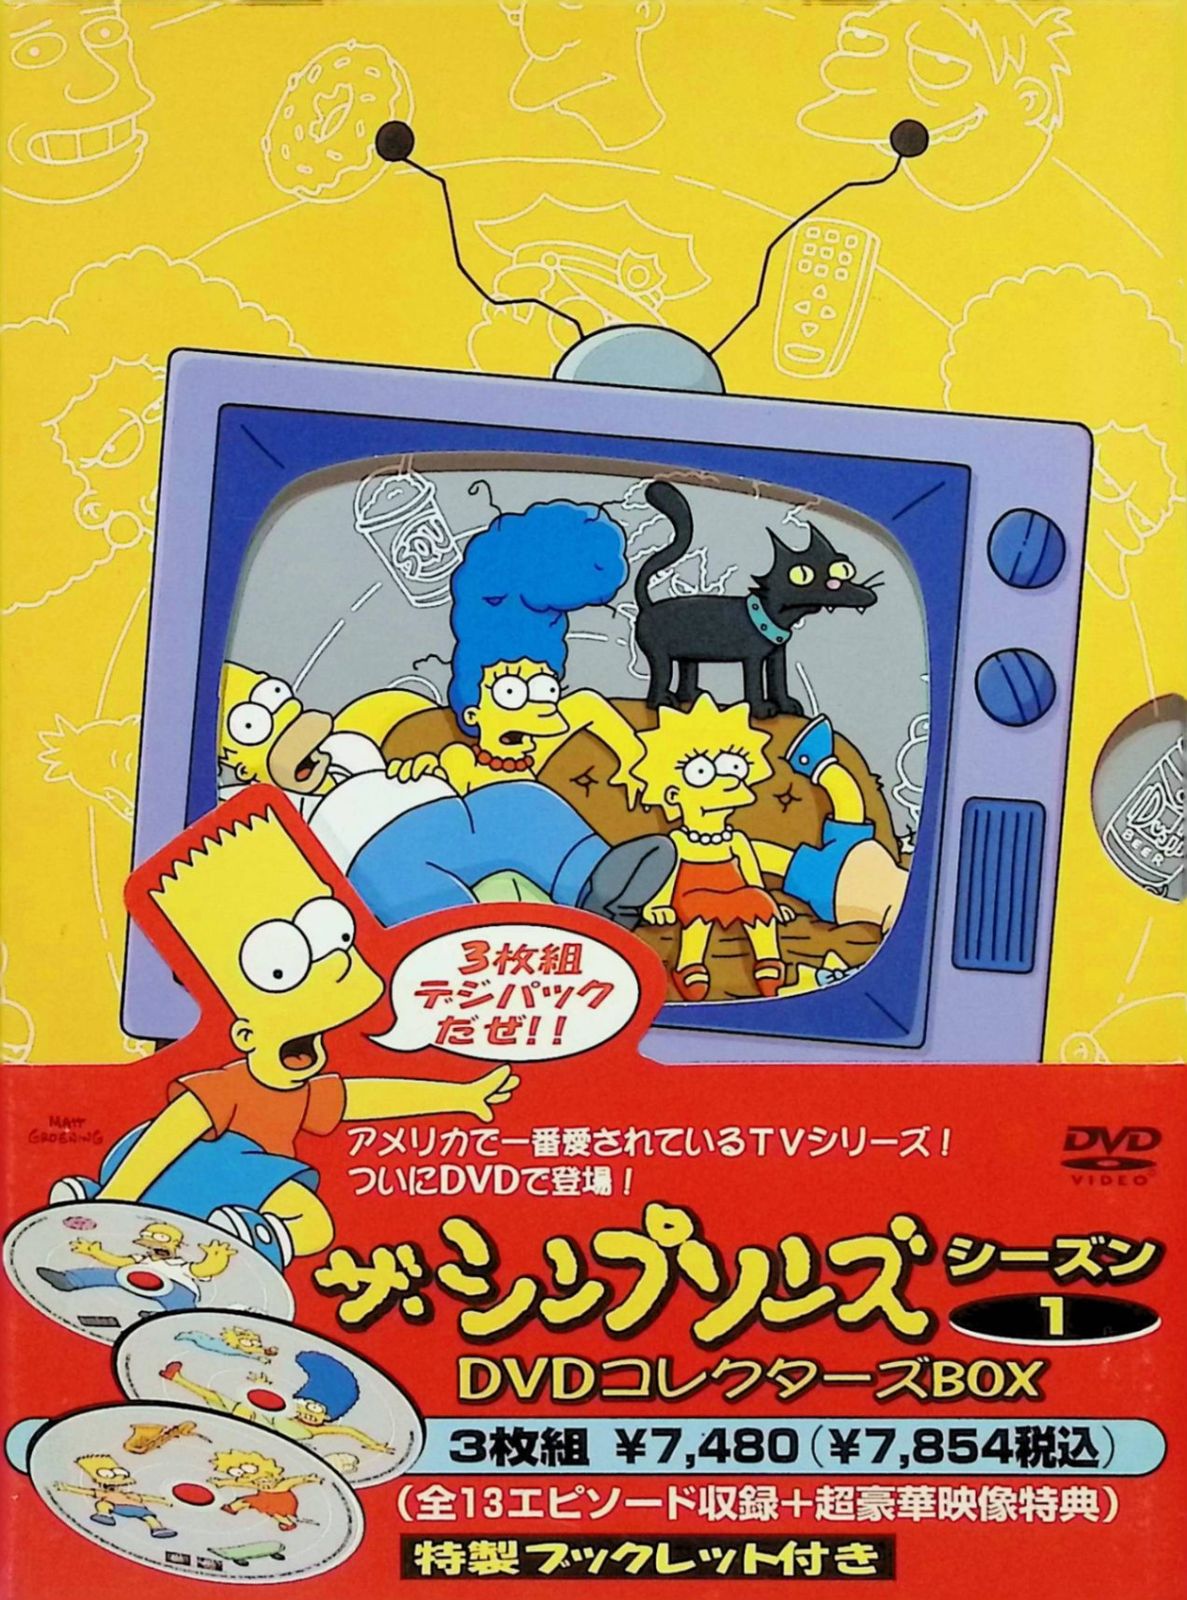 ザ・シンプソンズ シーズン 1 DVD コレクターズBOX (DVD3枚組) - メルカリ